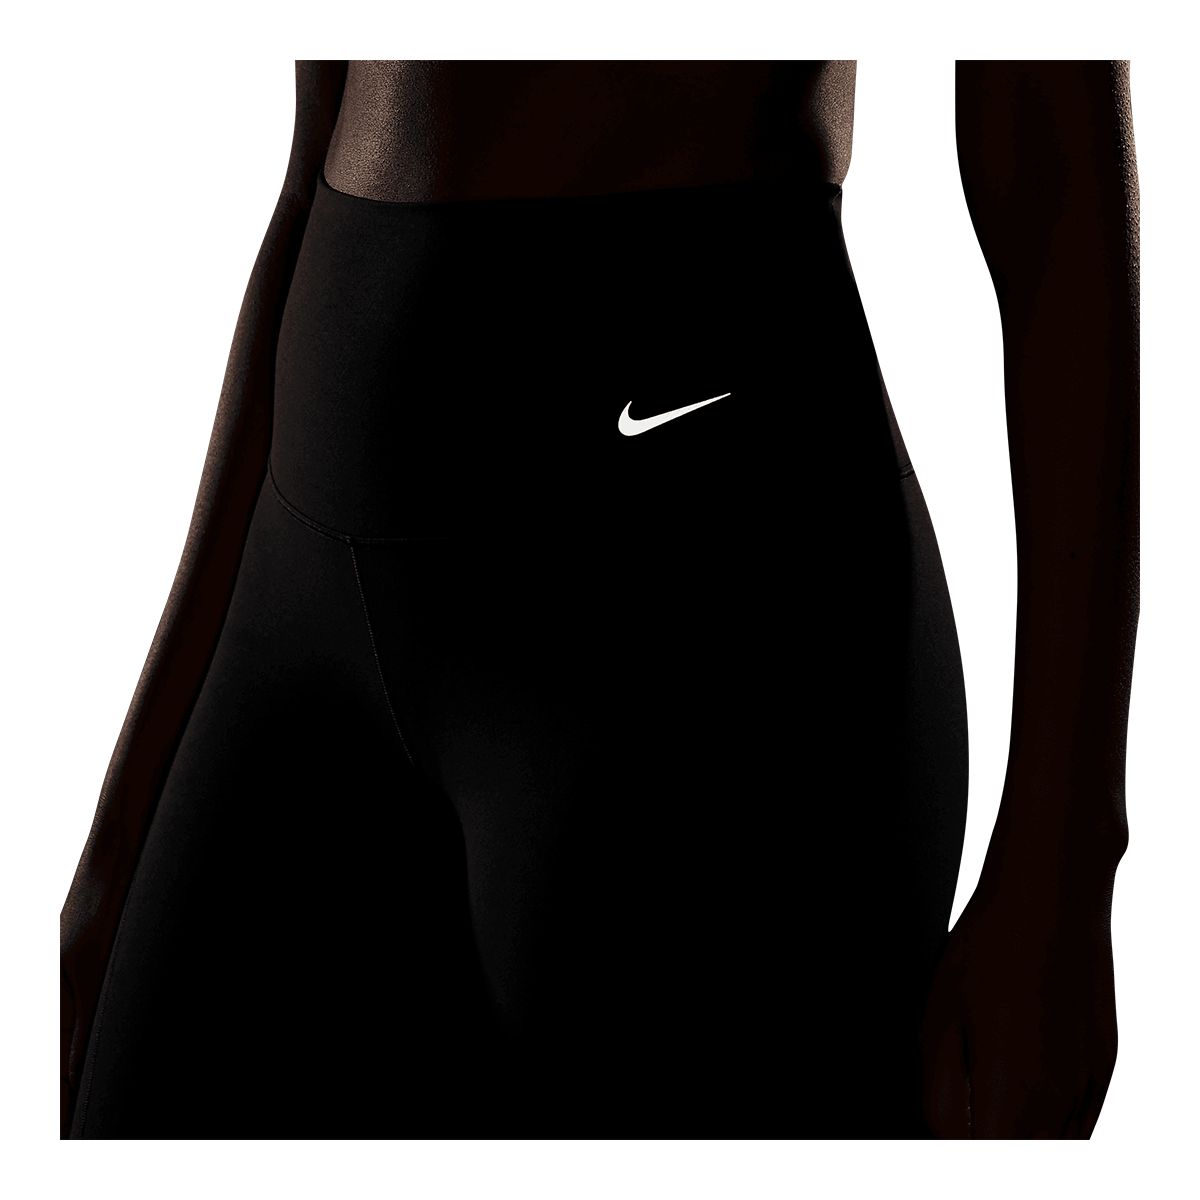 Nike Leggings Women's, Zenvy, PRO, One